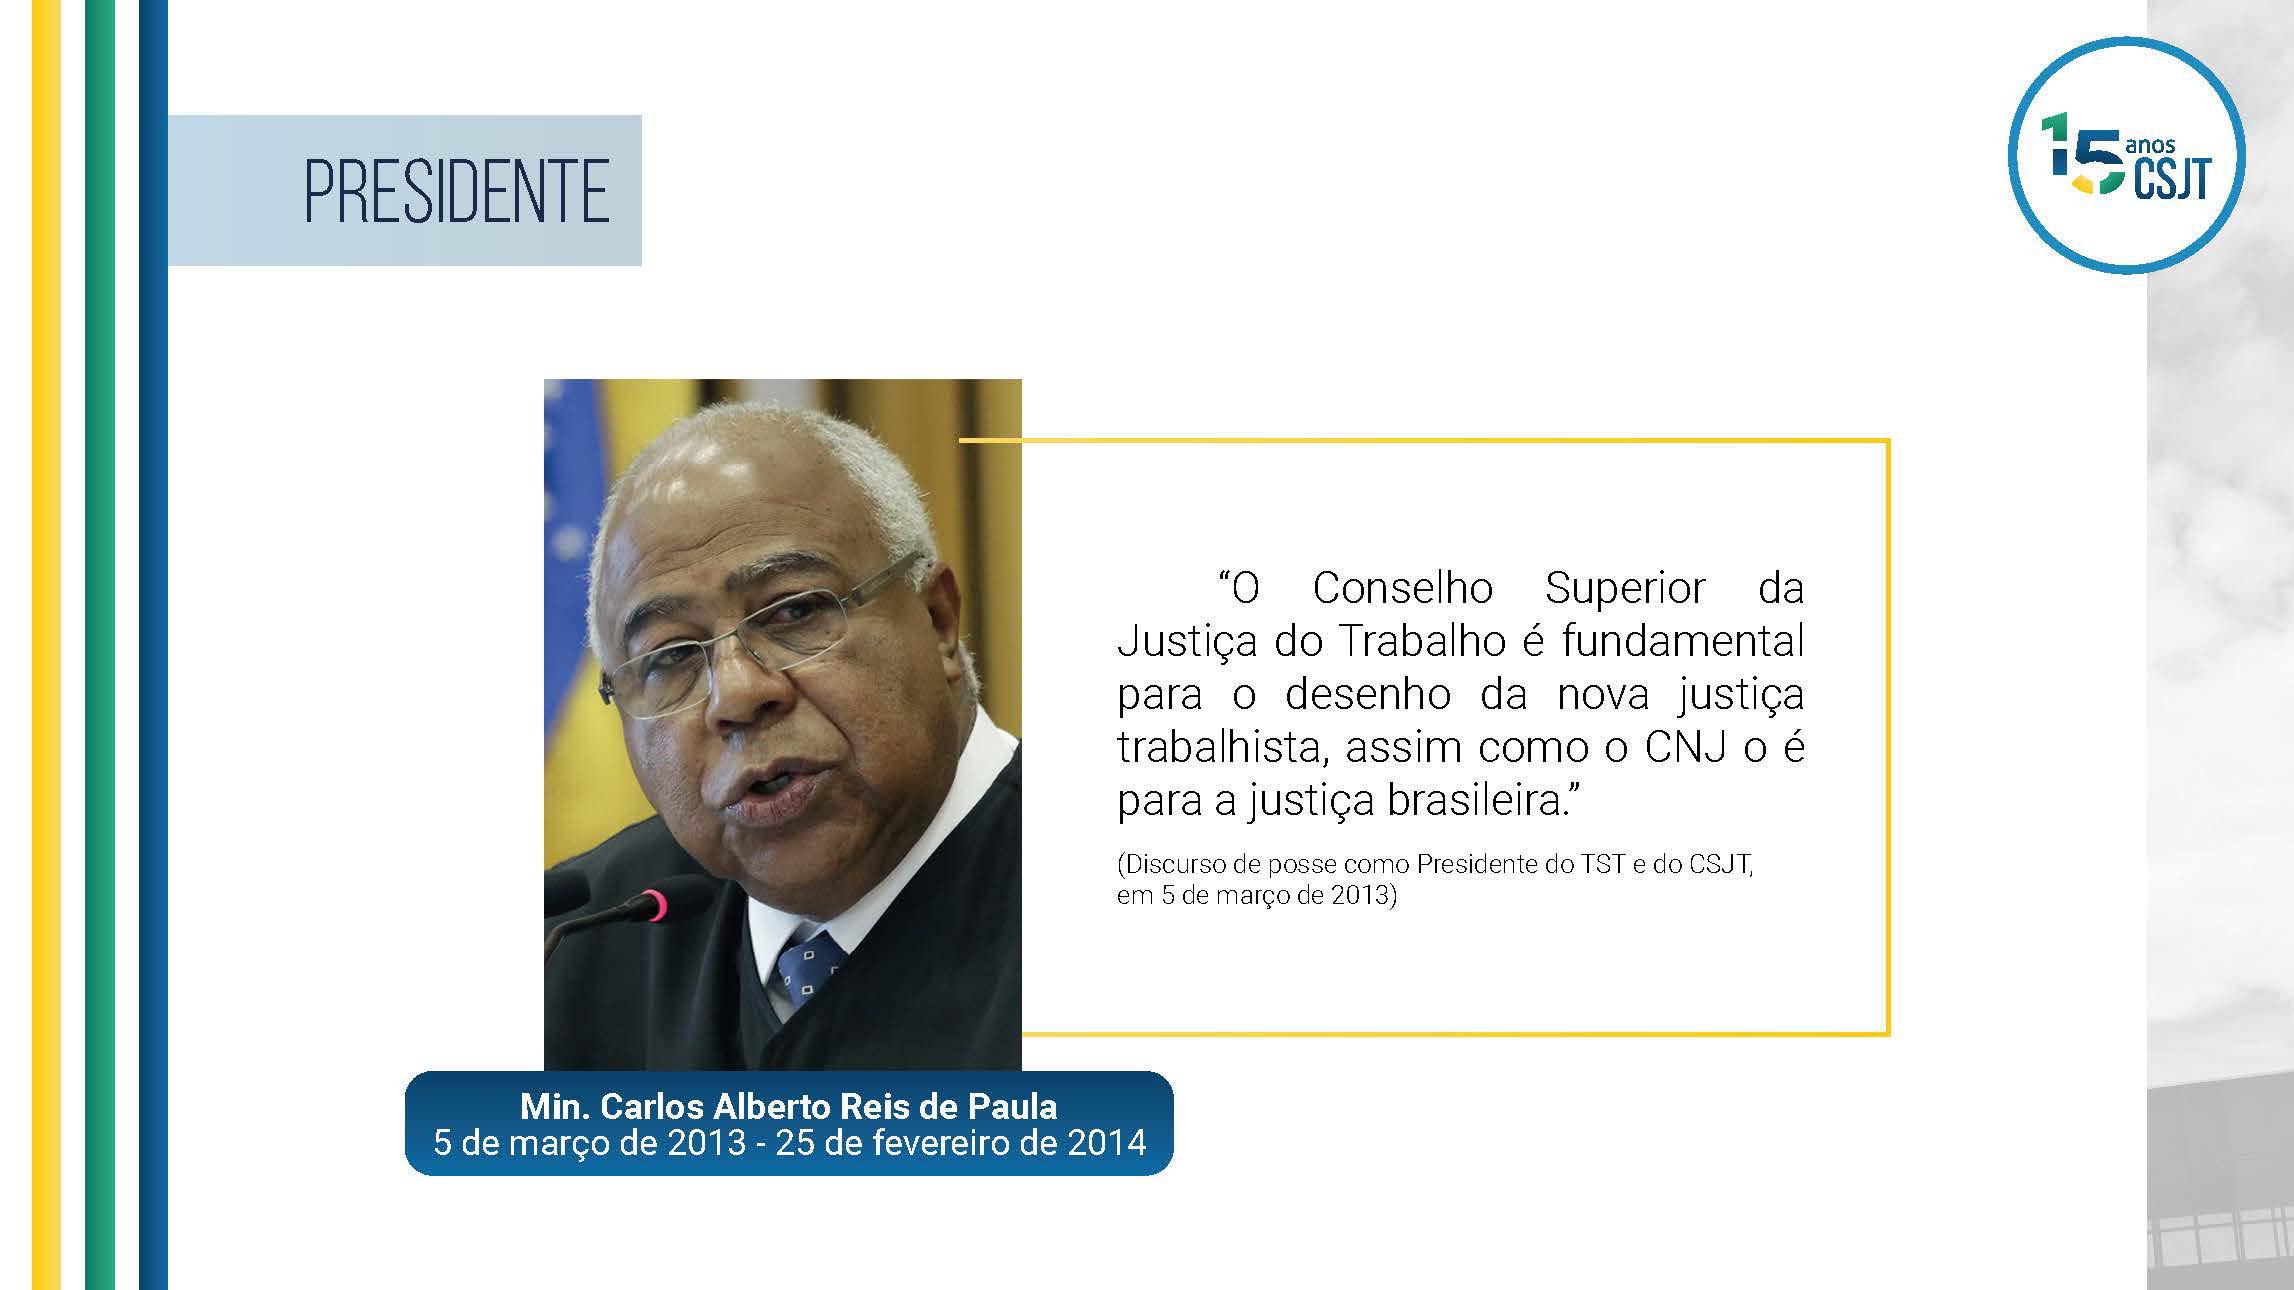 Frase do ministro Carlos Alberto Reis de Paula no discurso de posse como Presidente do TST e do CSJT, em 5 de março de 2013. O Conselho Superior da Justiça do Trabalho é fundamental para o desenho da nova justiça trabalhista, assim como o CNJ o é para a justiça brasileira.